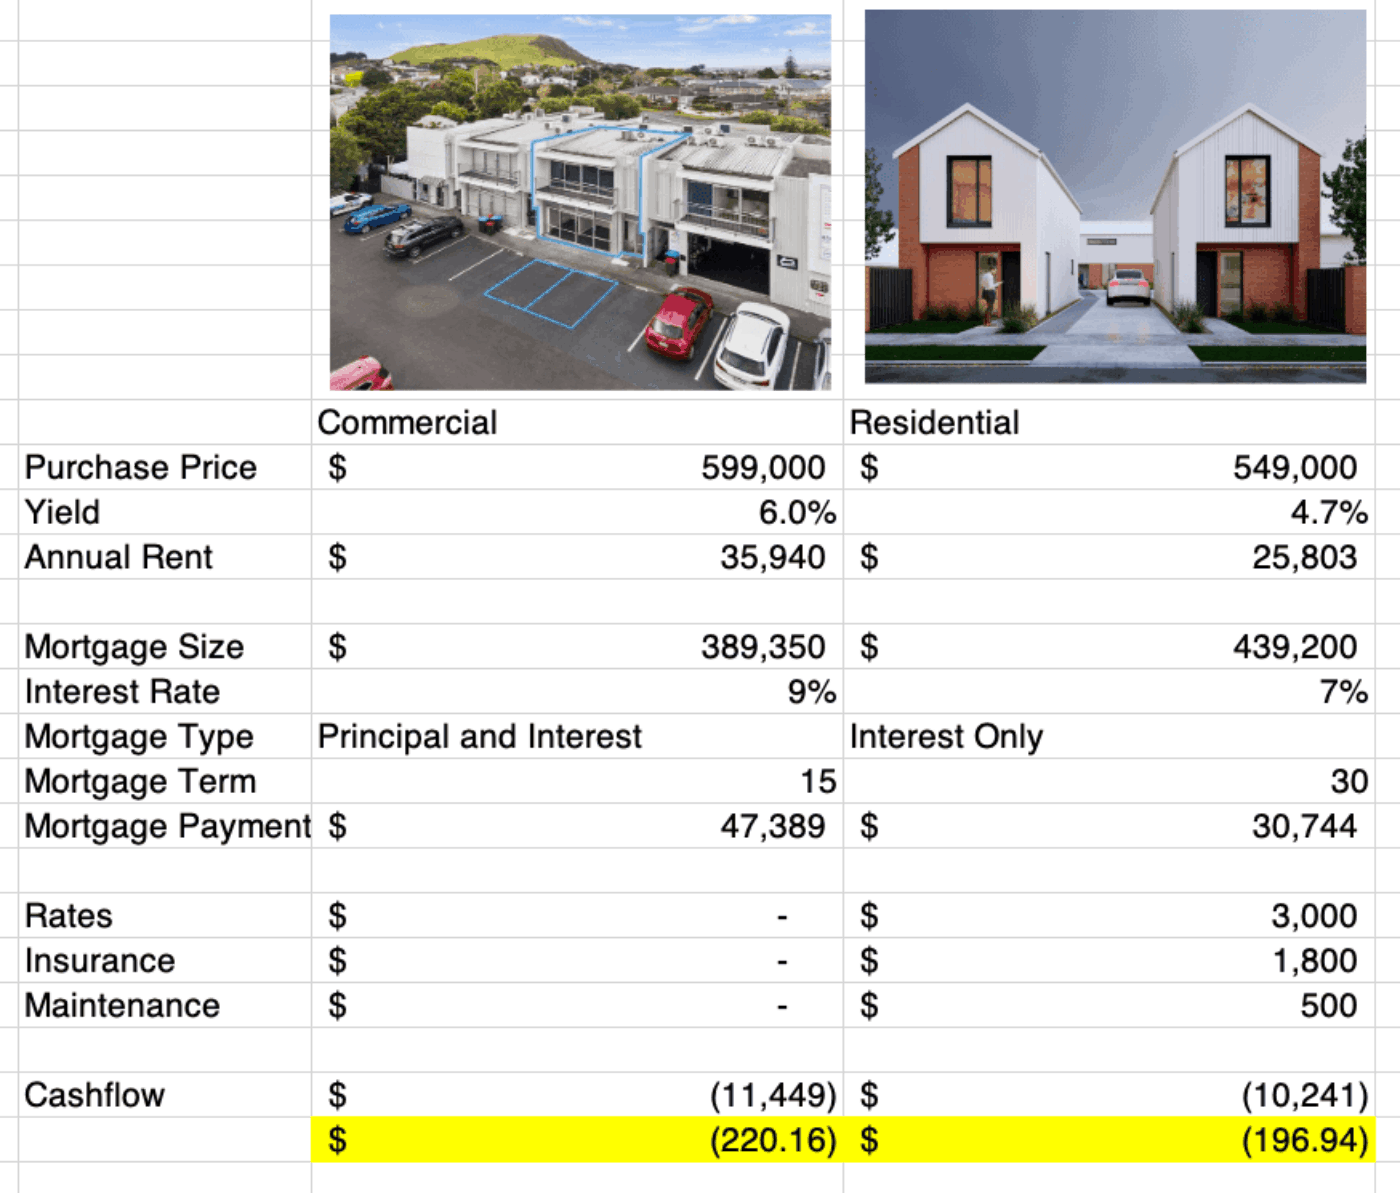 Commercial vs Residential - cashflow